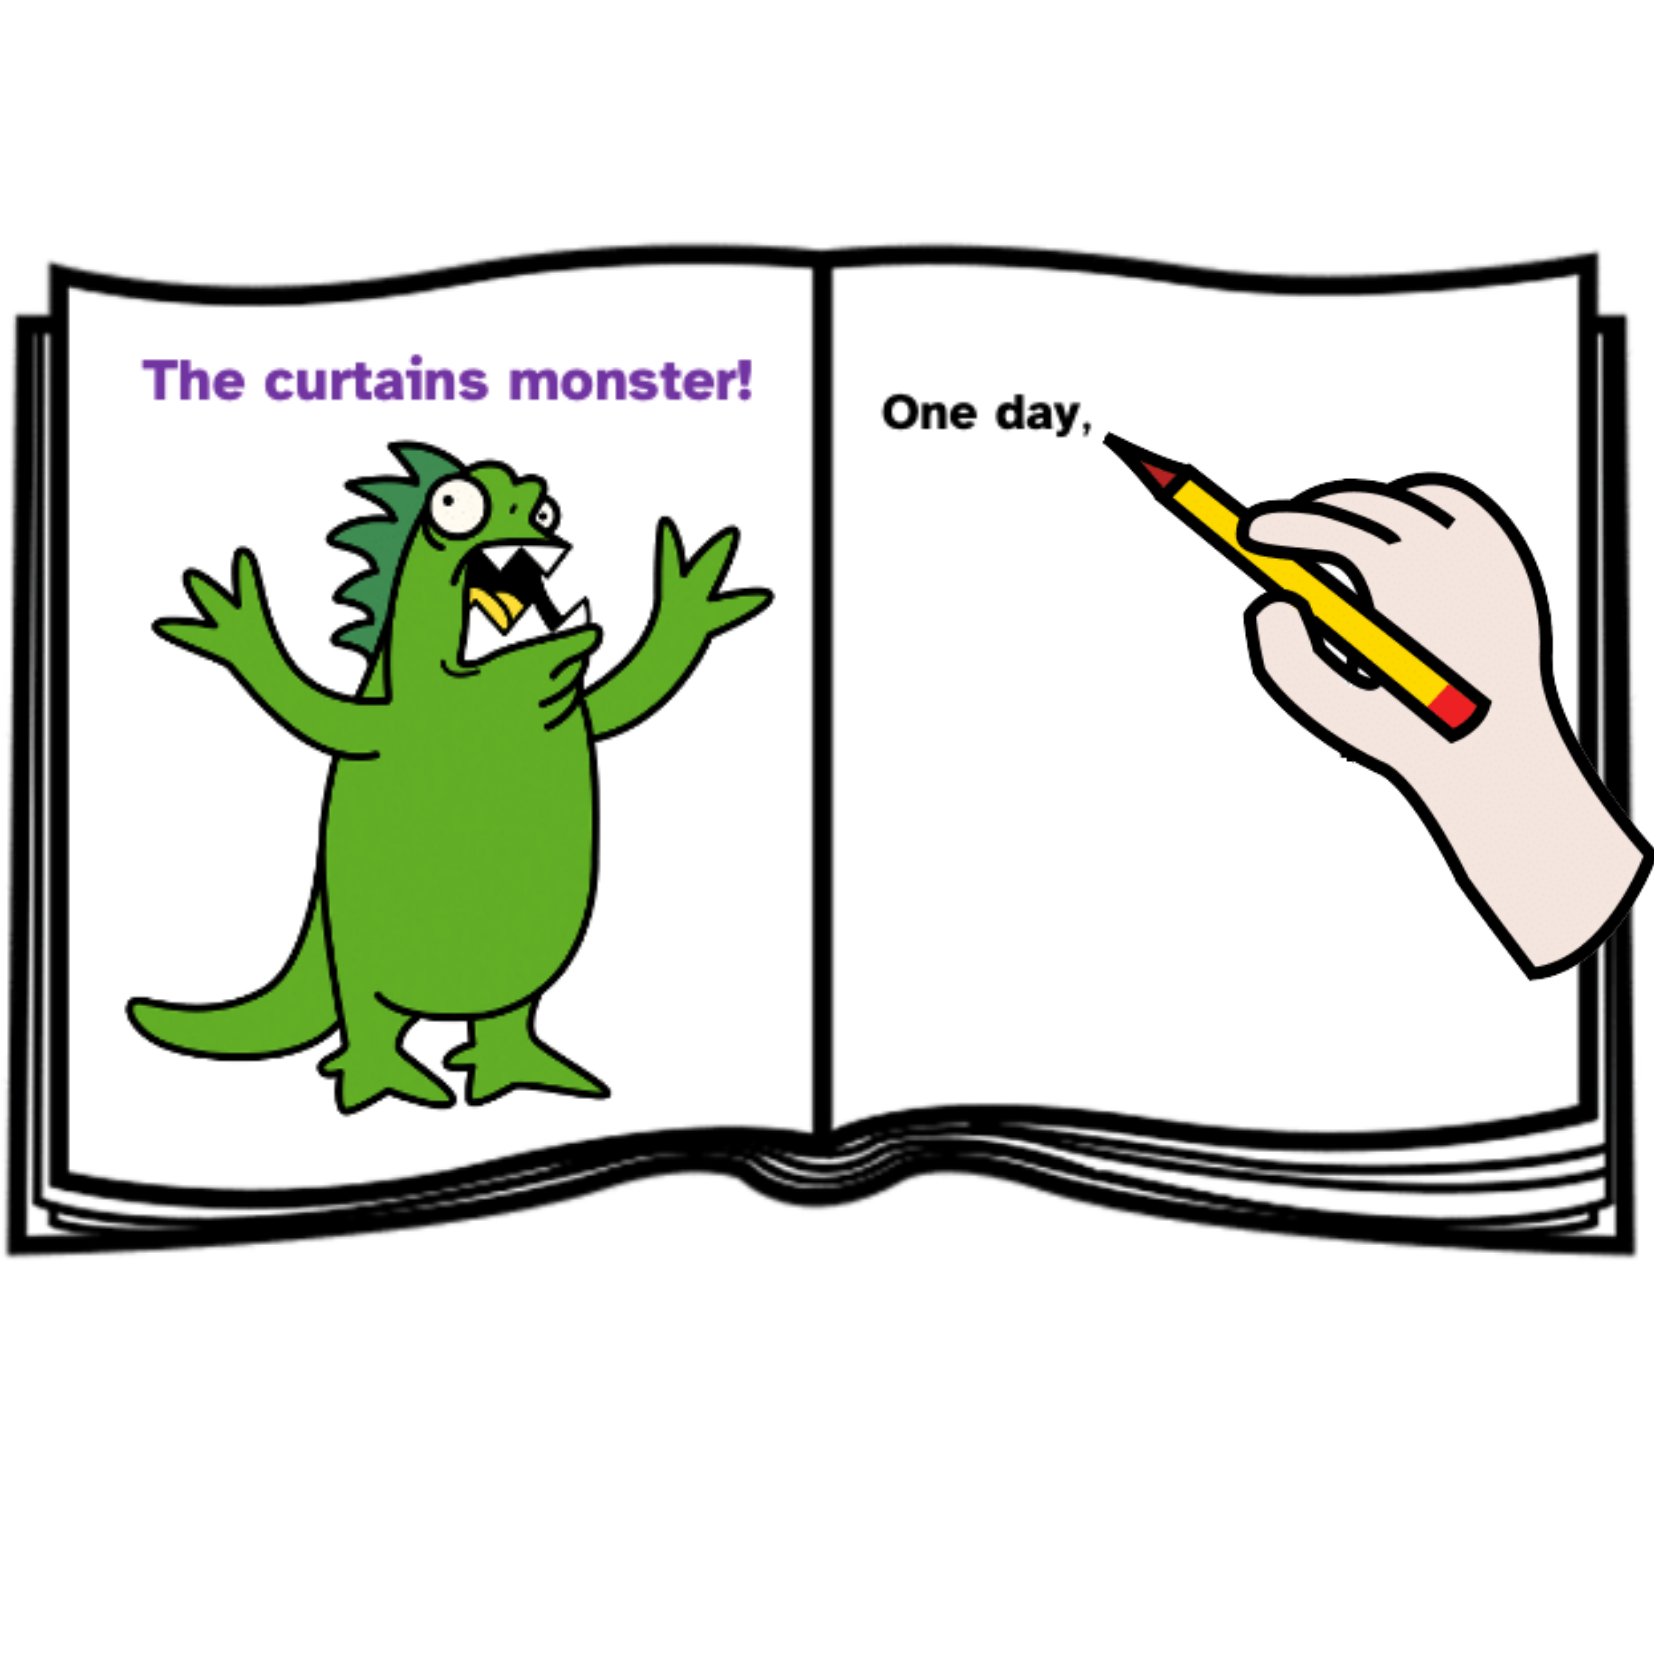  Pictograma de una libreta abierta donde aparece el título y dibujo de un monstruo en un lado y en el otro una mano con un lápiz y escribiendo.